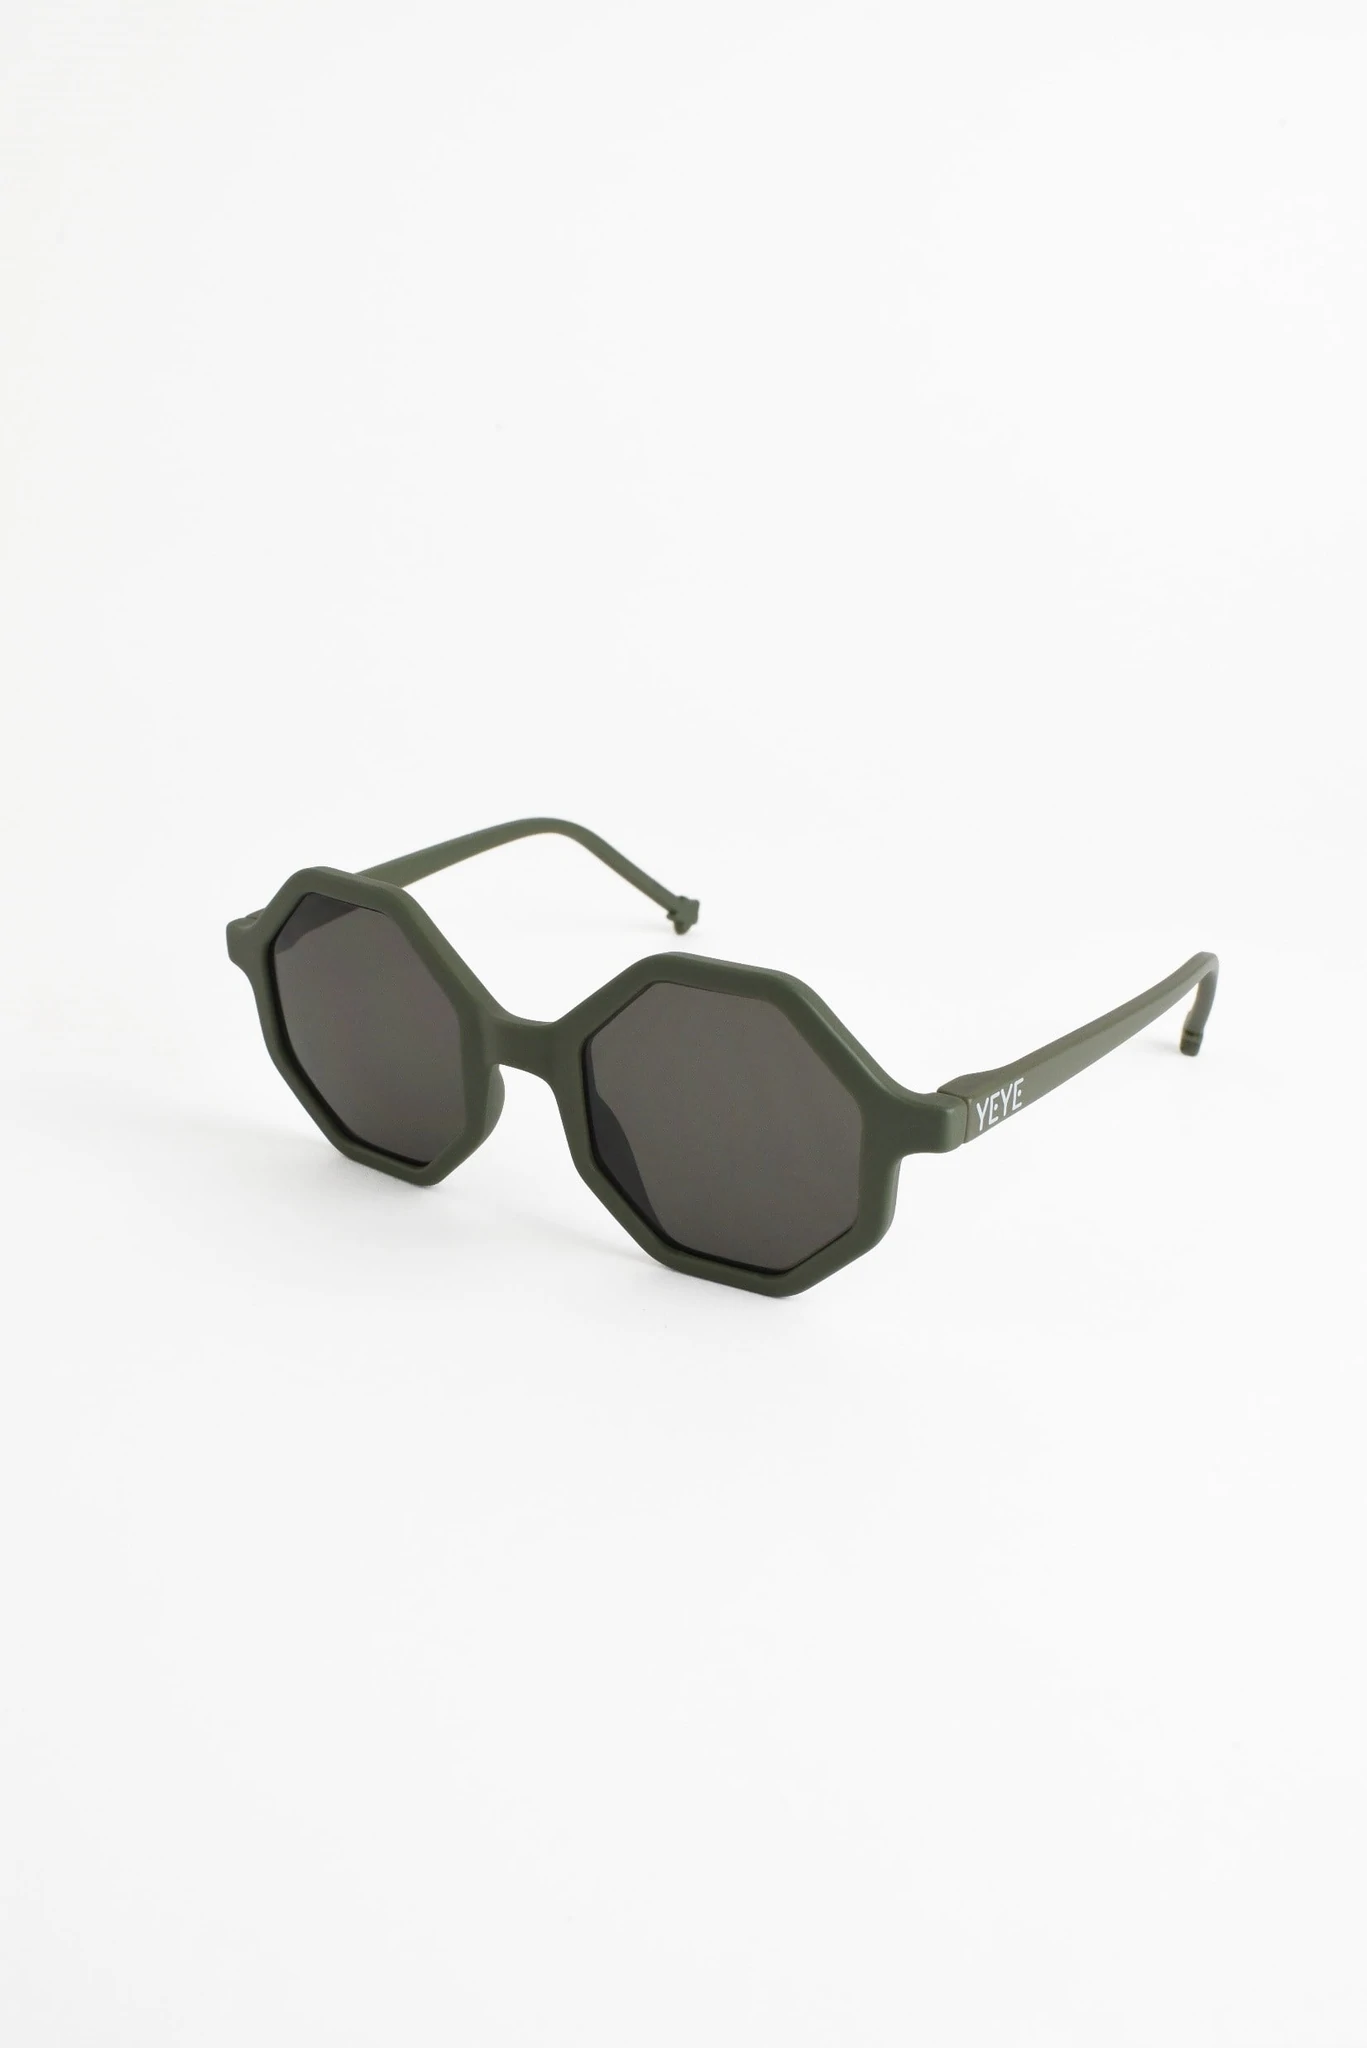 Okulary przeciwsłoneczne dla dzieci Khaki Green 1